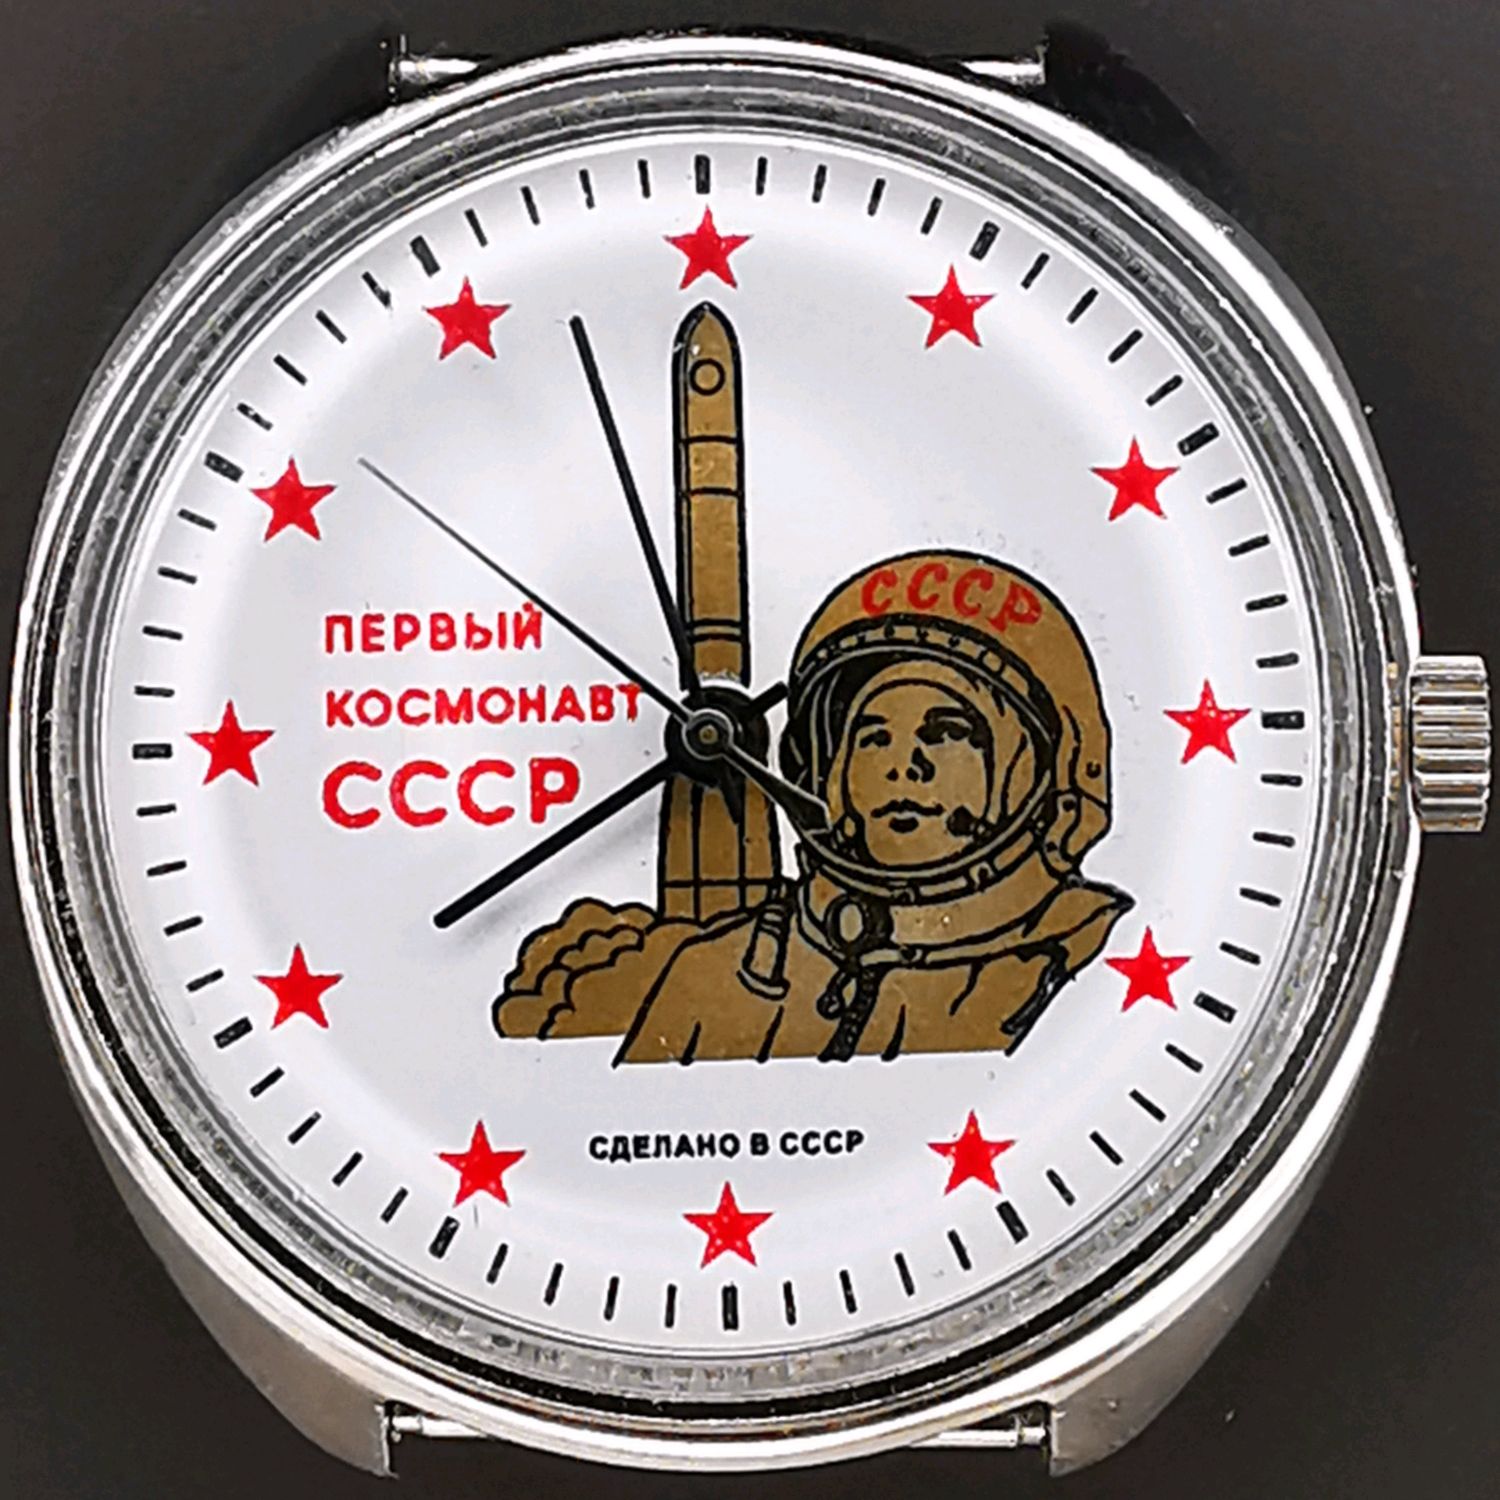 Часы восток космонавт. Часы Восток 1 космонавт. Часы ракета 1974. Часы ракета СССР 1961.